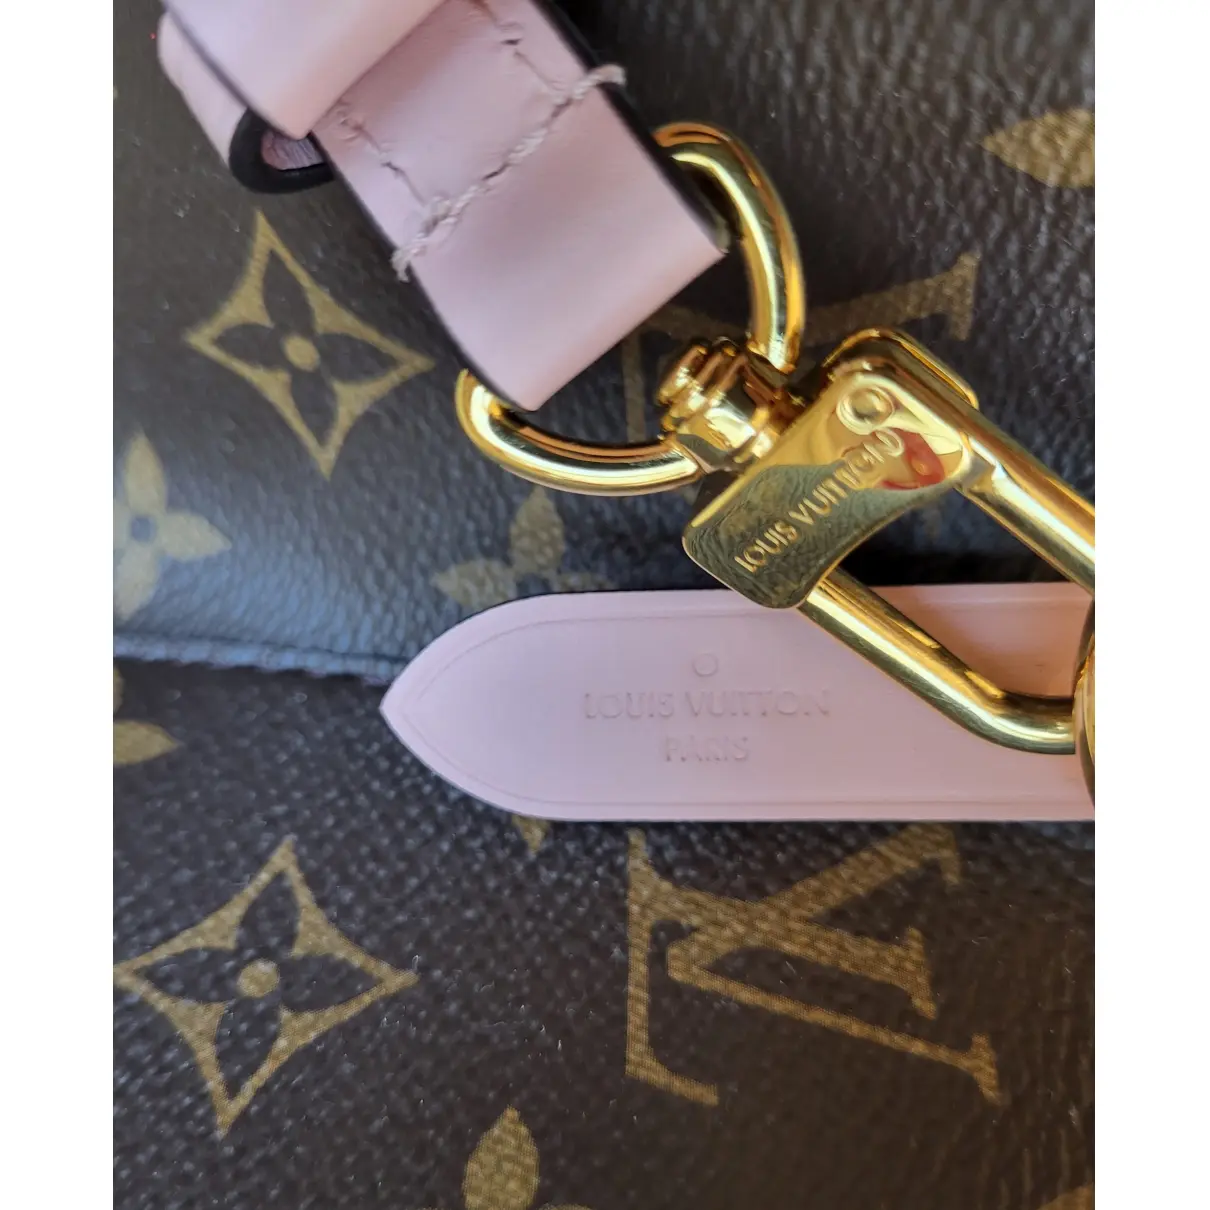 NéoNoé cloth handbag Louis Vuitton